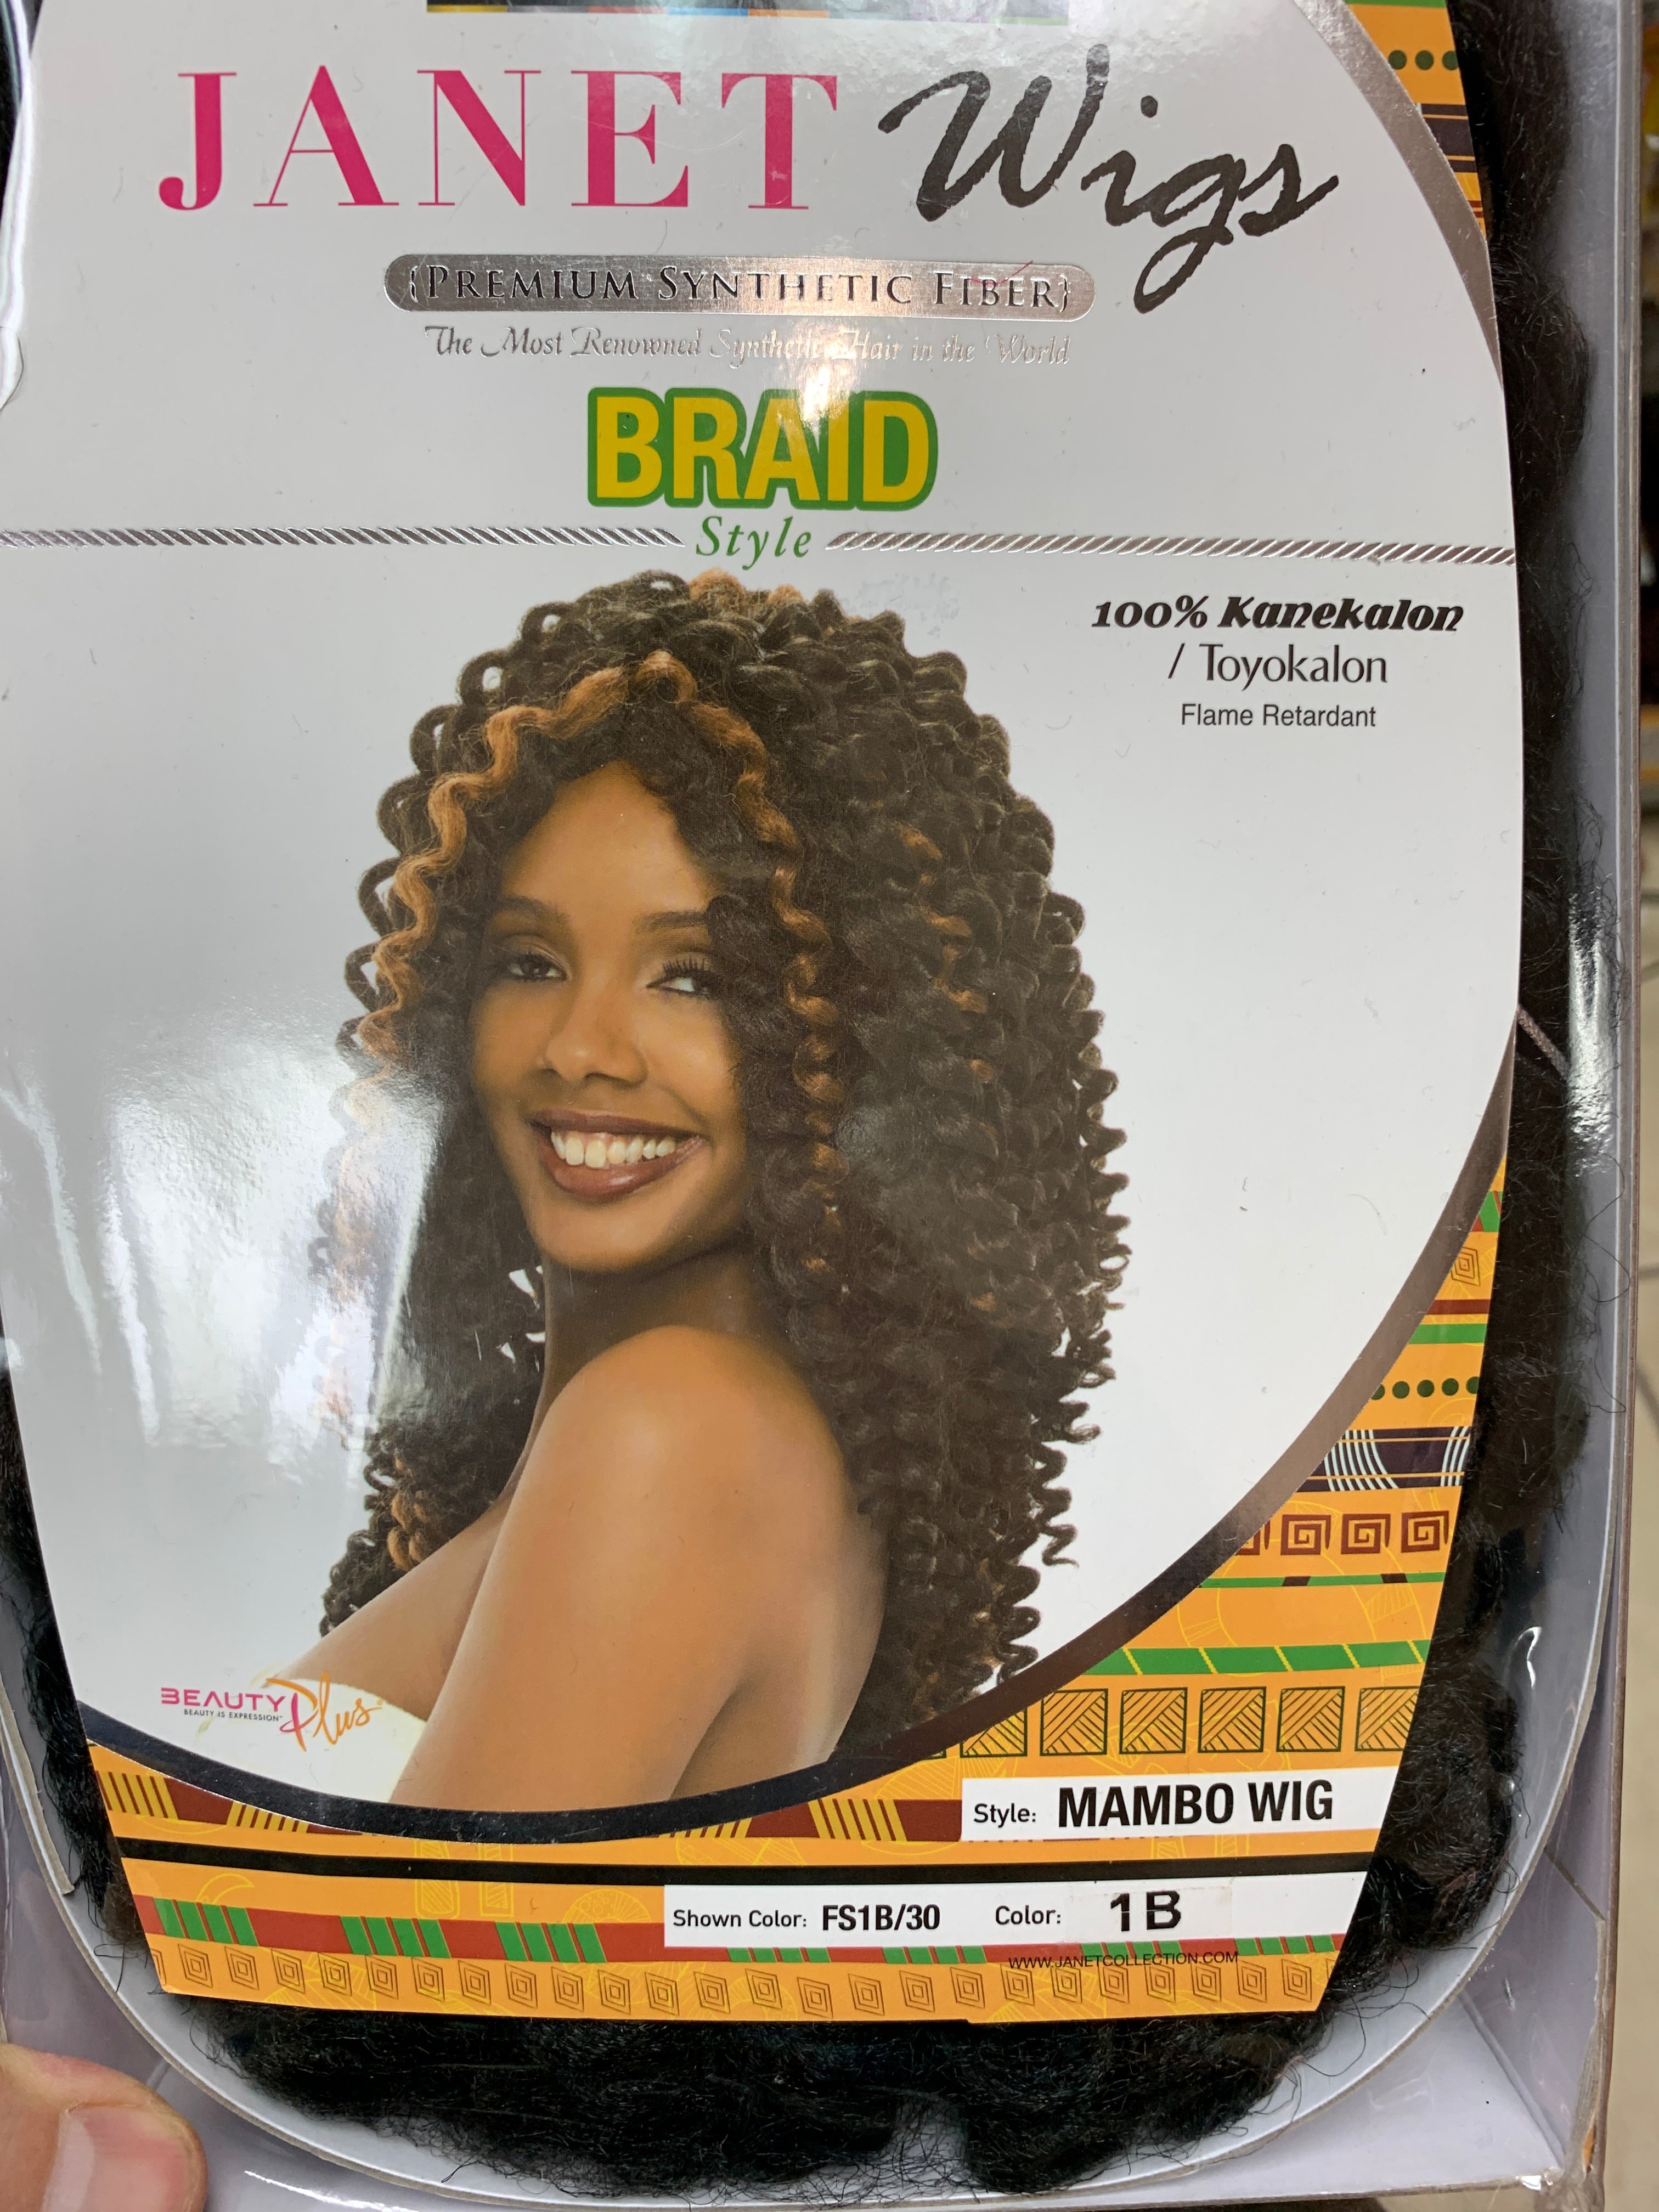 Janet Mambo braid style